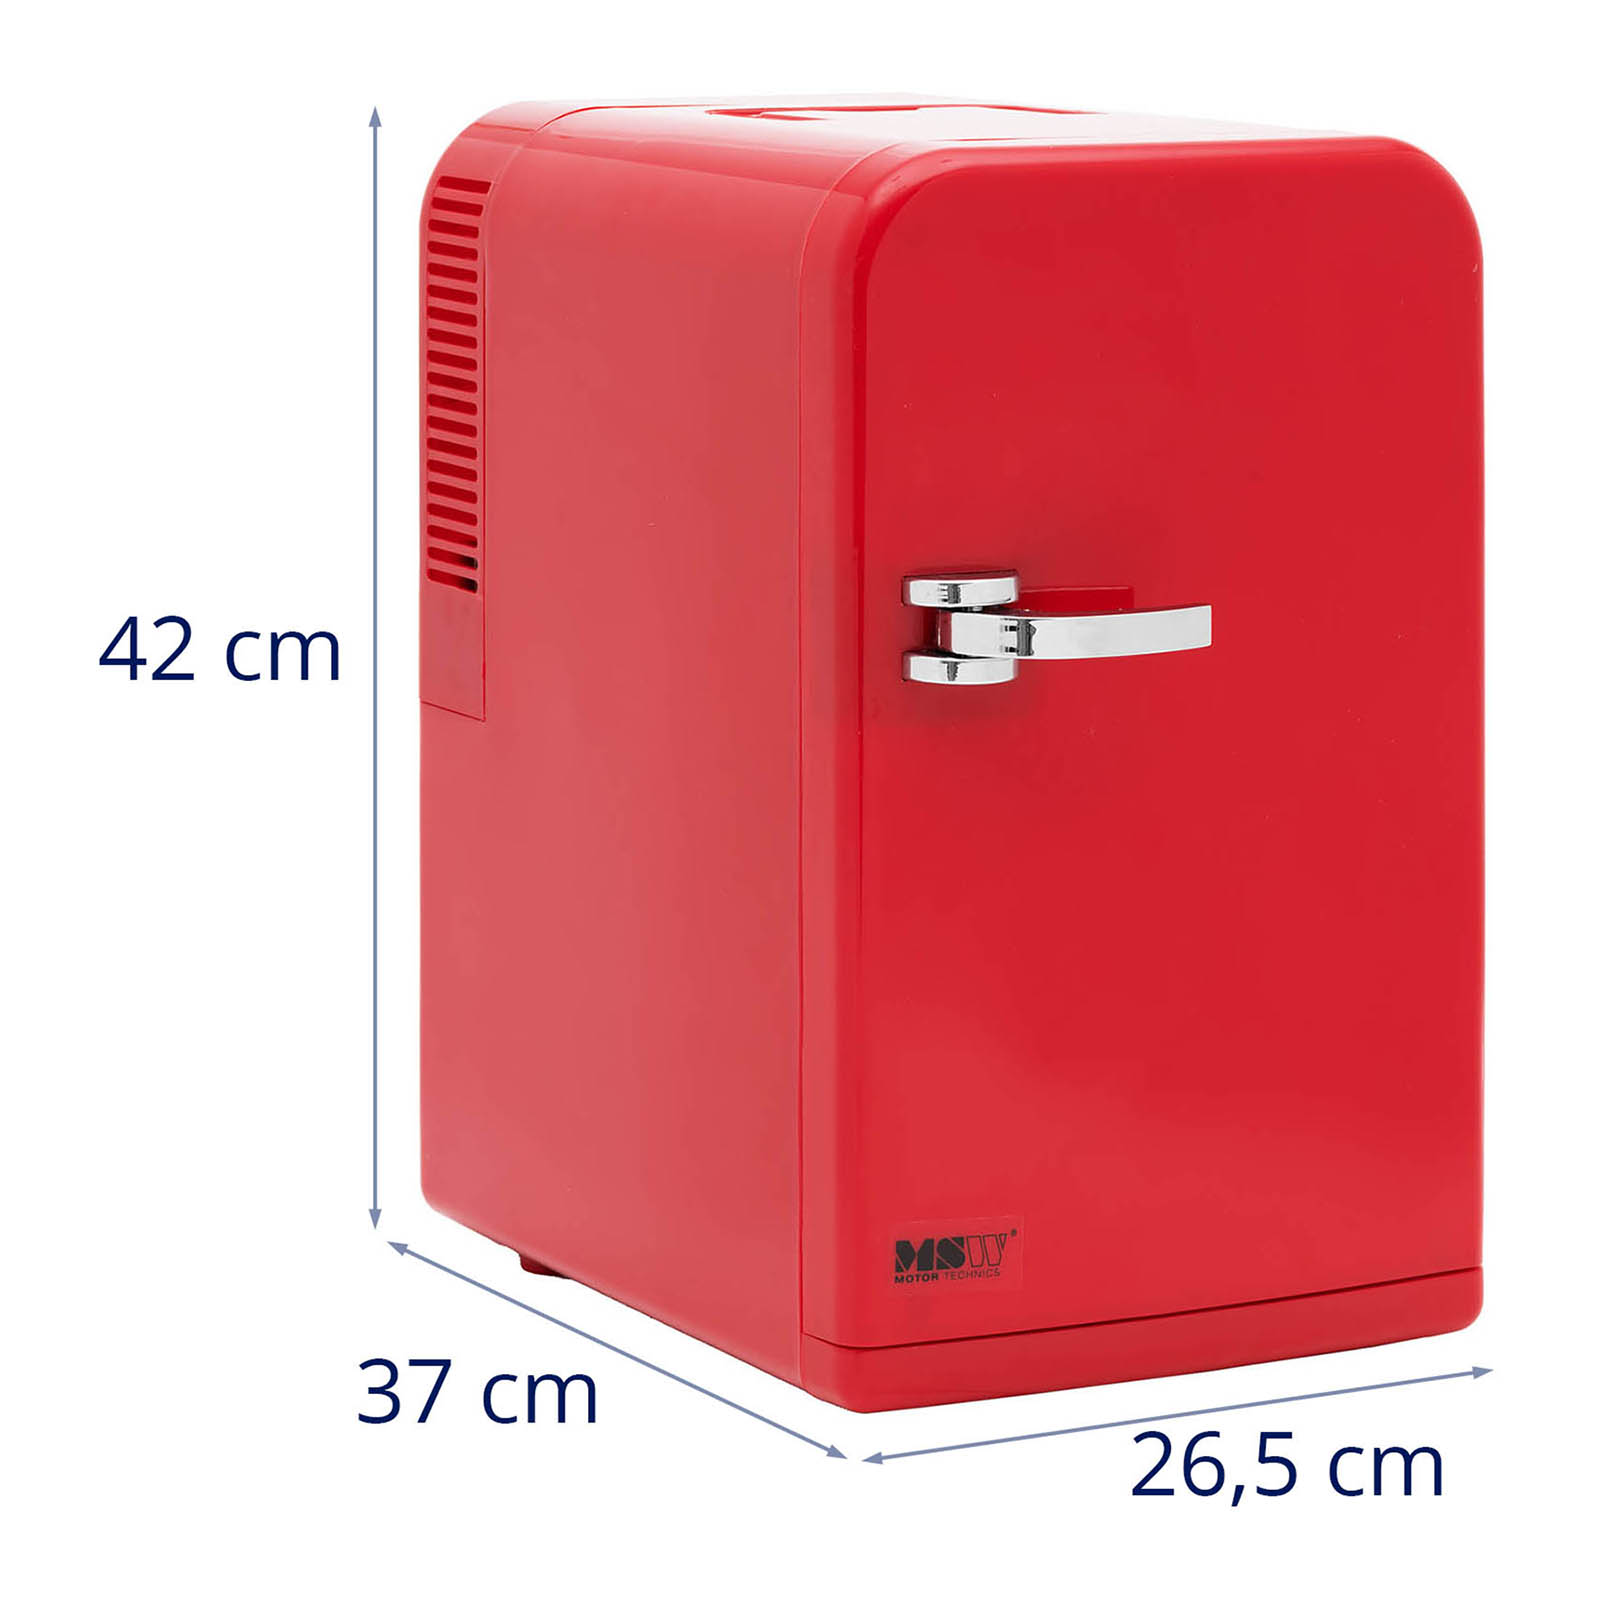 Mini-Kühlschrank 12 V / 230 V - 2-in-1-Gerät mit Warmhaltefunktion - 15 L - Rot